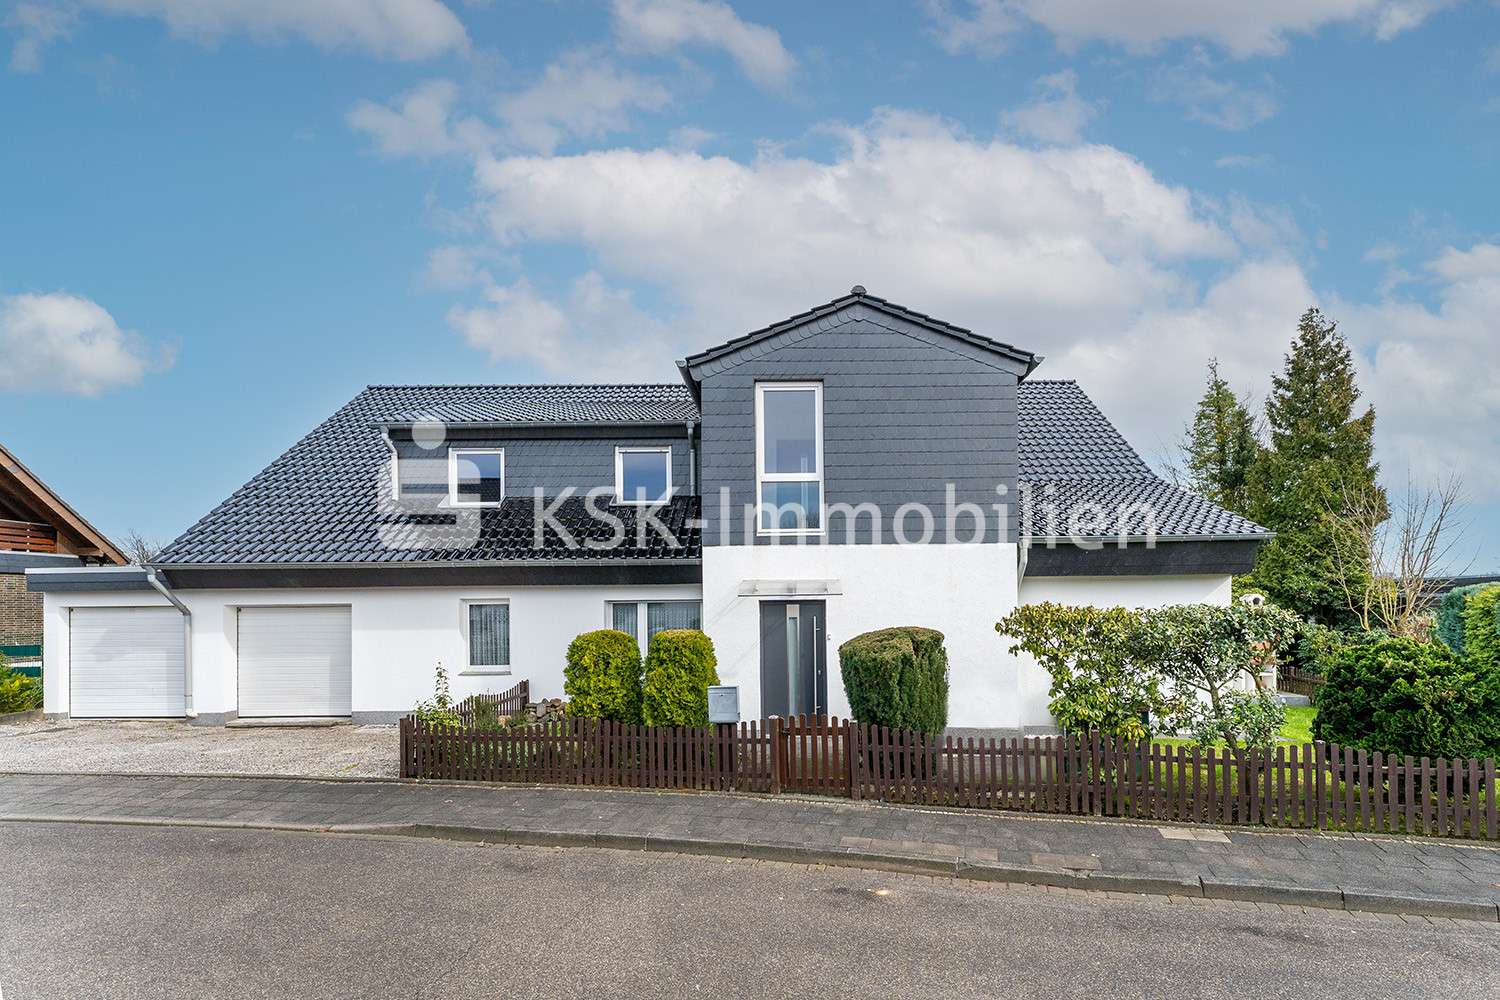 115288 Außenansicht - Einfamilienhaus in 51519 Odenthal mit 289m² günstig kaufen